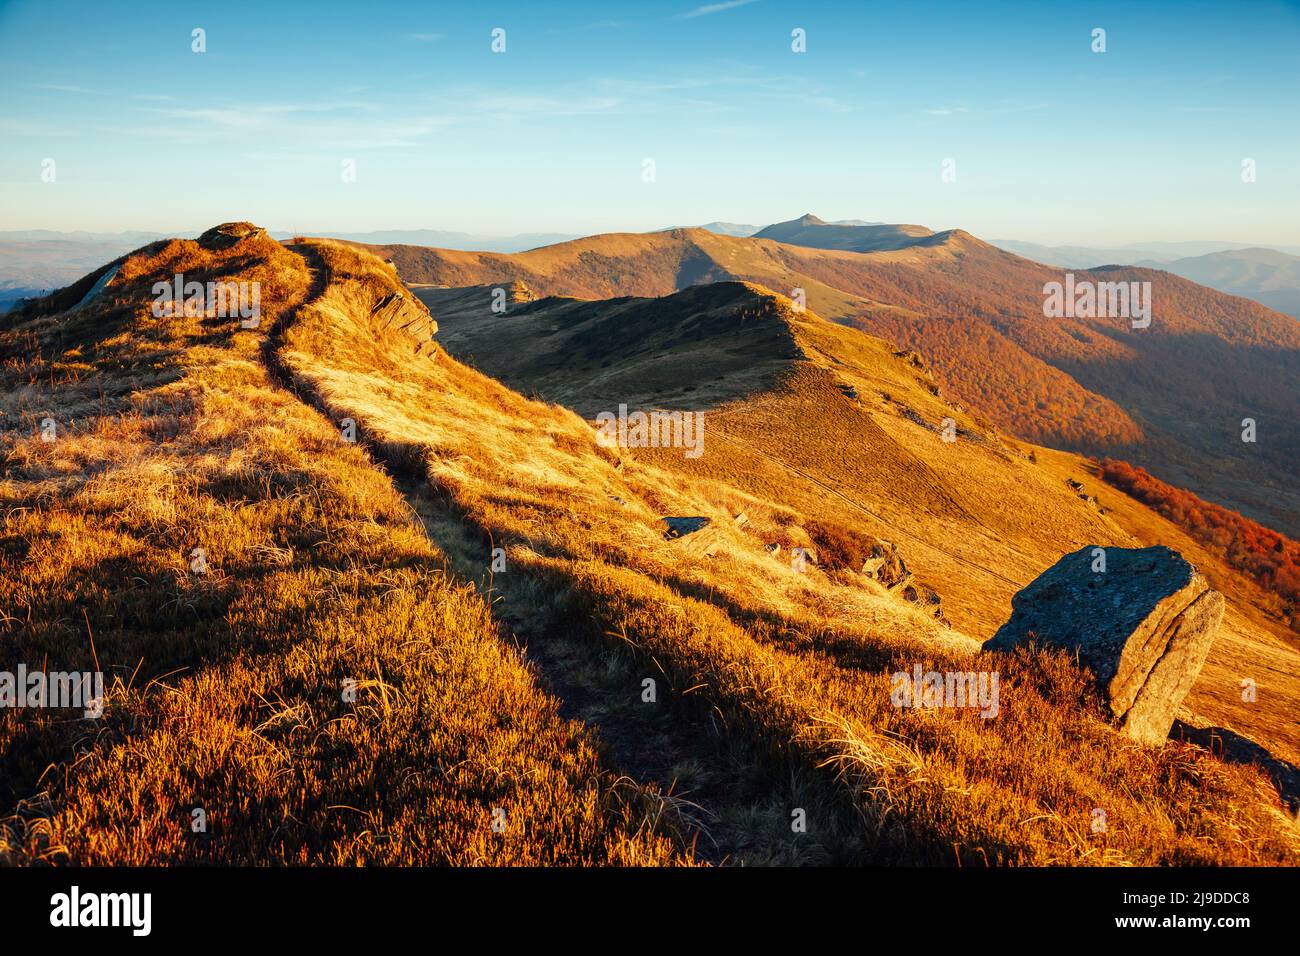 Ein Blick auf die faszinierende Szene des alpinen Hochlandes. Malerischer Tag. Ort Ort Karpaten, Ukraine, Europa. Wunderbares Bild von Tapeten. Handeln Stockfoto